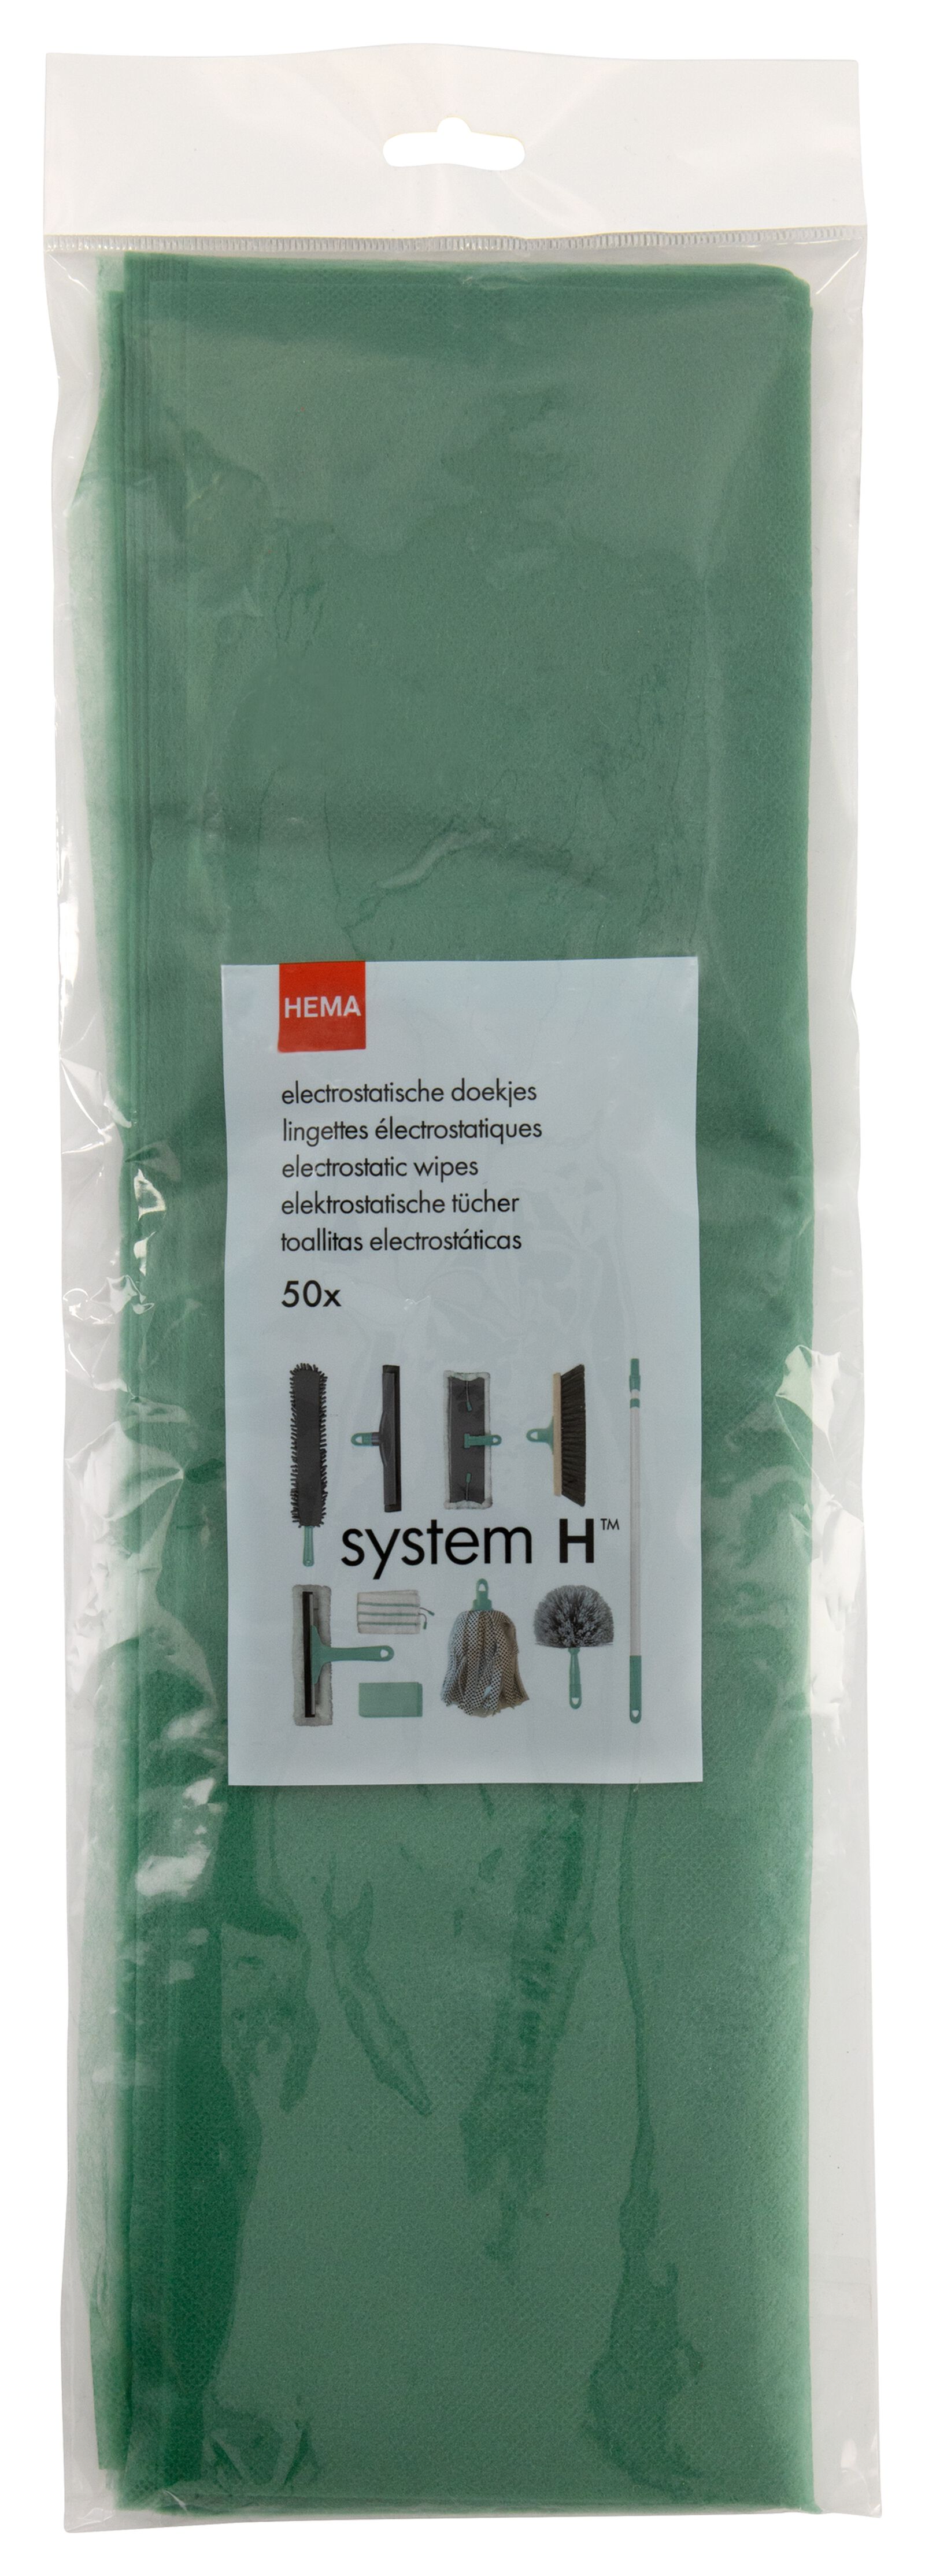 50 lingettes pour sol électrostatiques - System H - 20510082 - HEMA